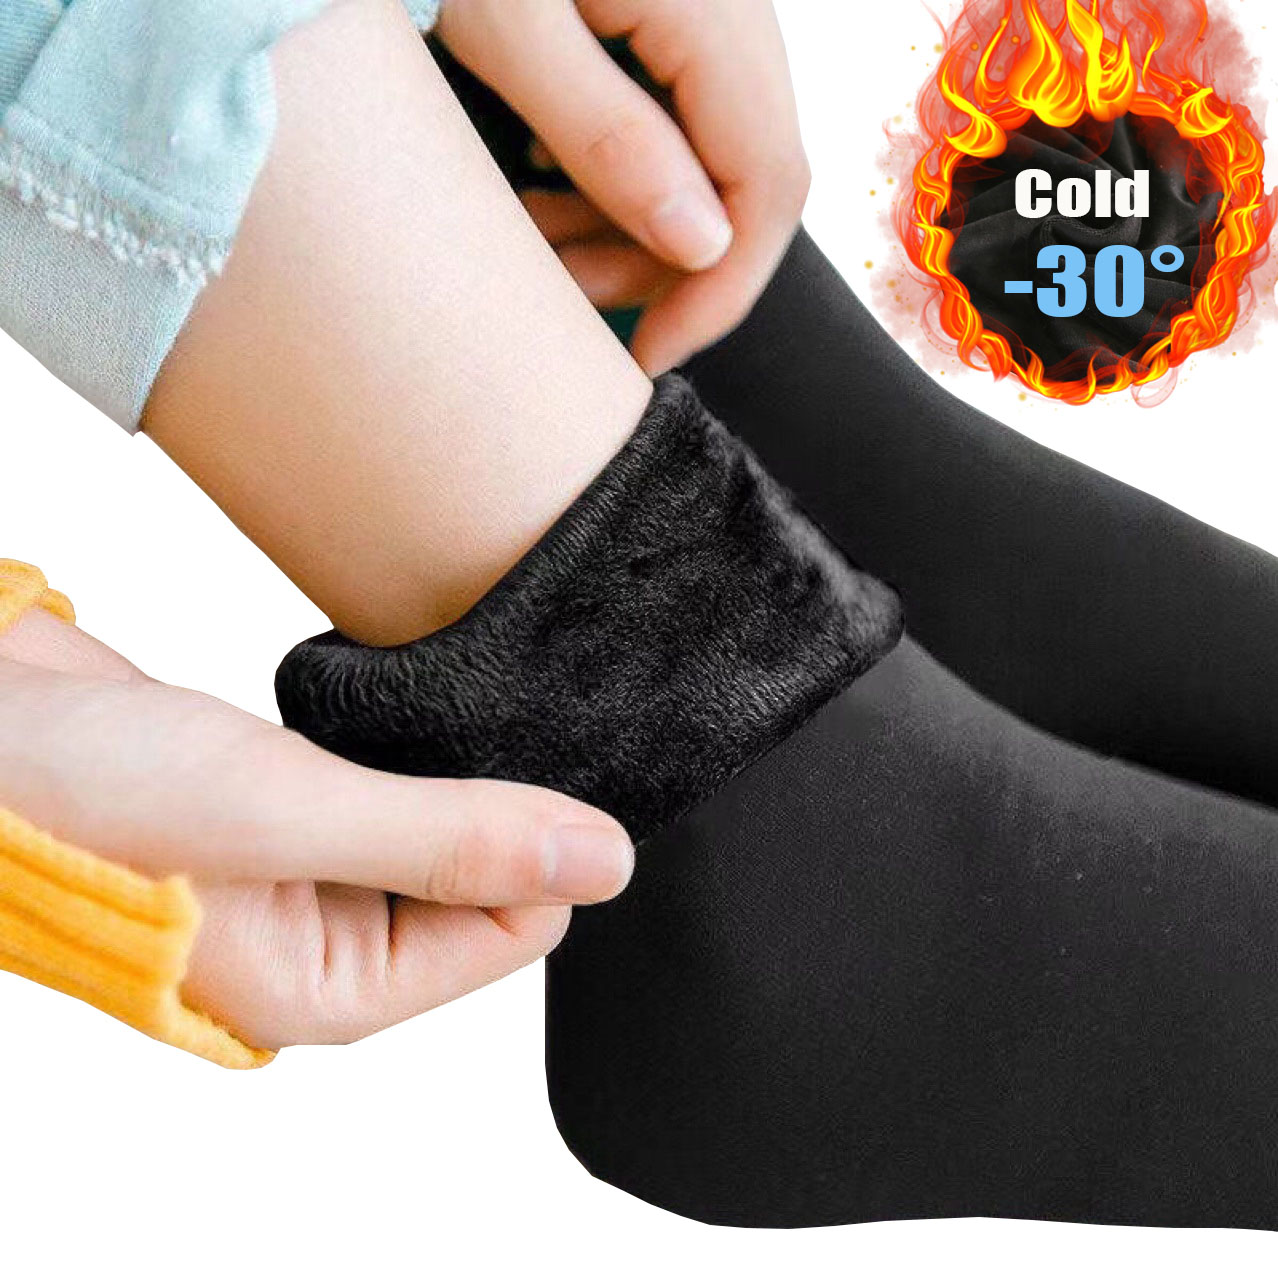 Chaussettes très chaudes femme - lot de 2 paires